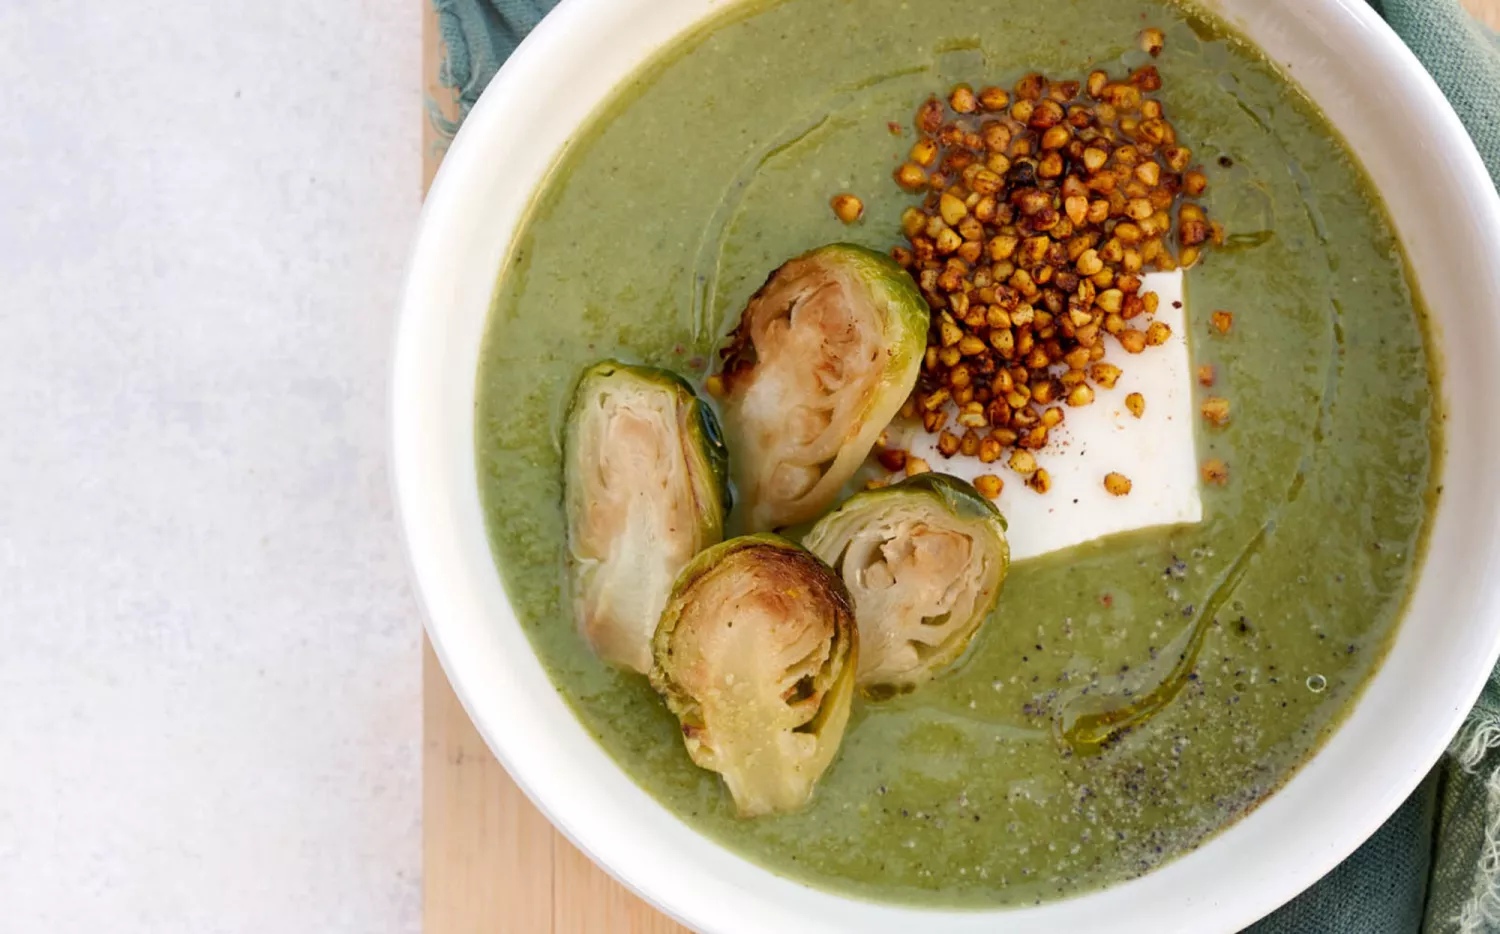 ¿Alguien dijo sopa? 😍 Cómo hacerla de brócoli, espinaca y queso